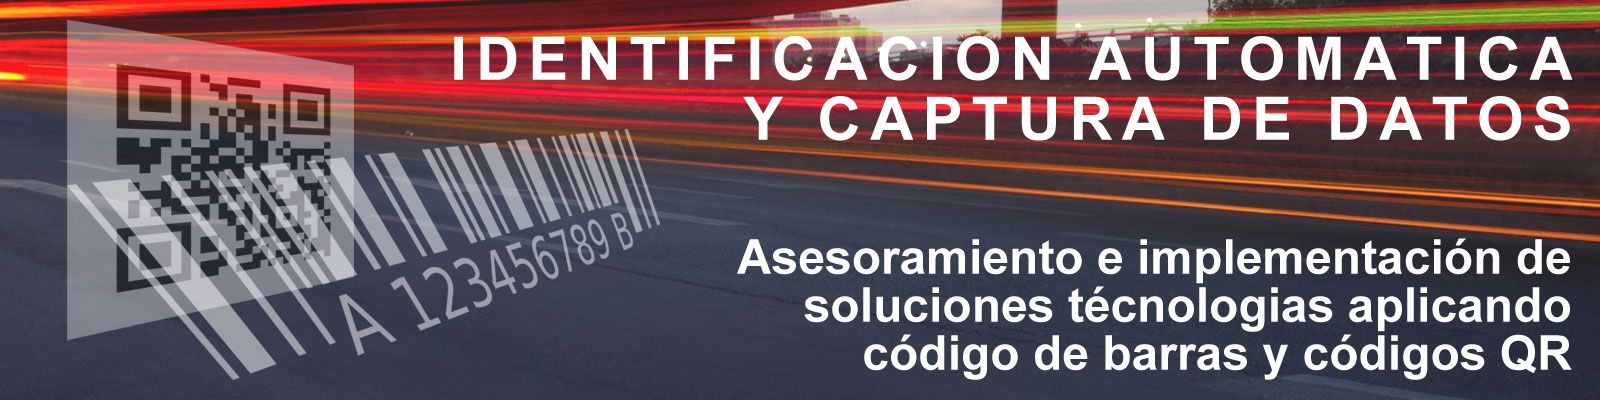 identificacion automatica y captura de datos de codigo de barras y qr cochabamba